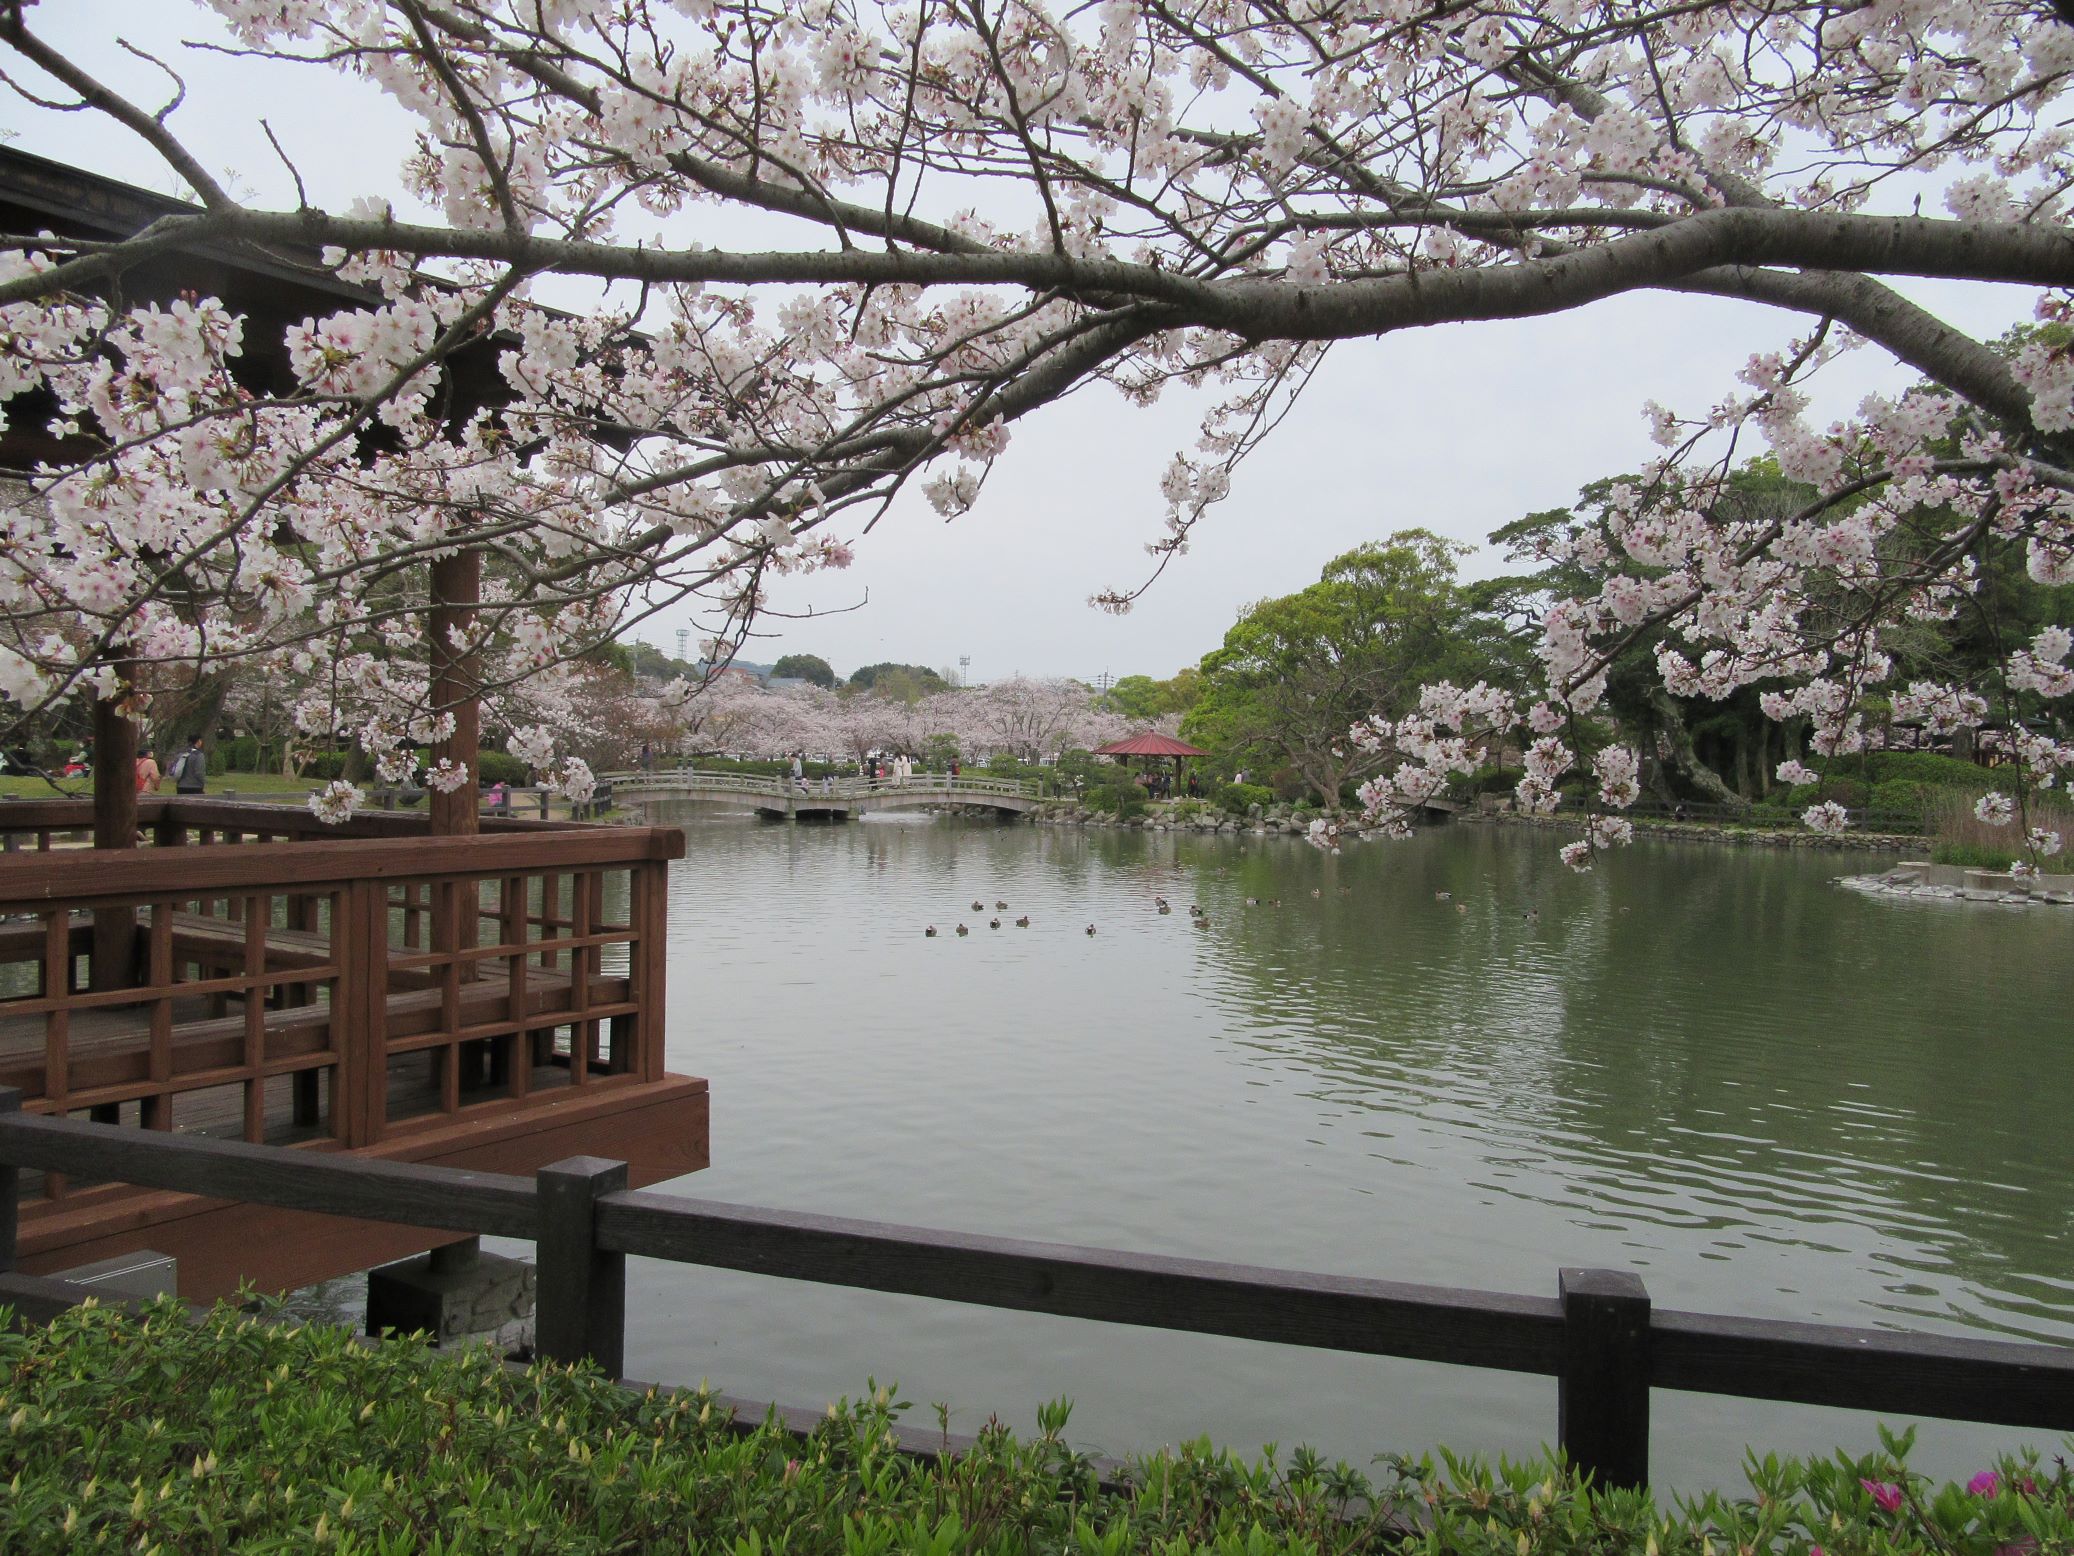 長崎県大村市の大村公園にて撮影した、桜の花と池と、遠くにいる鳥たちです。